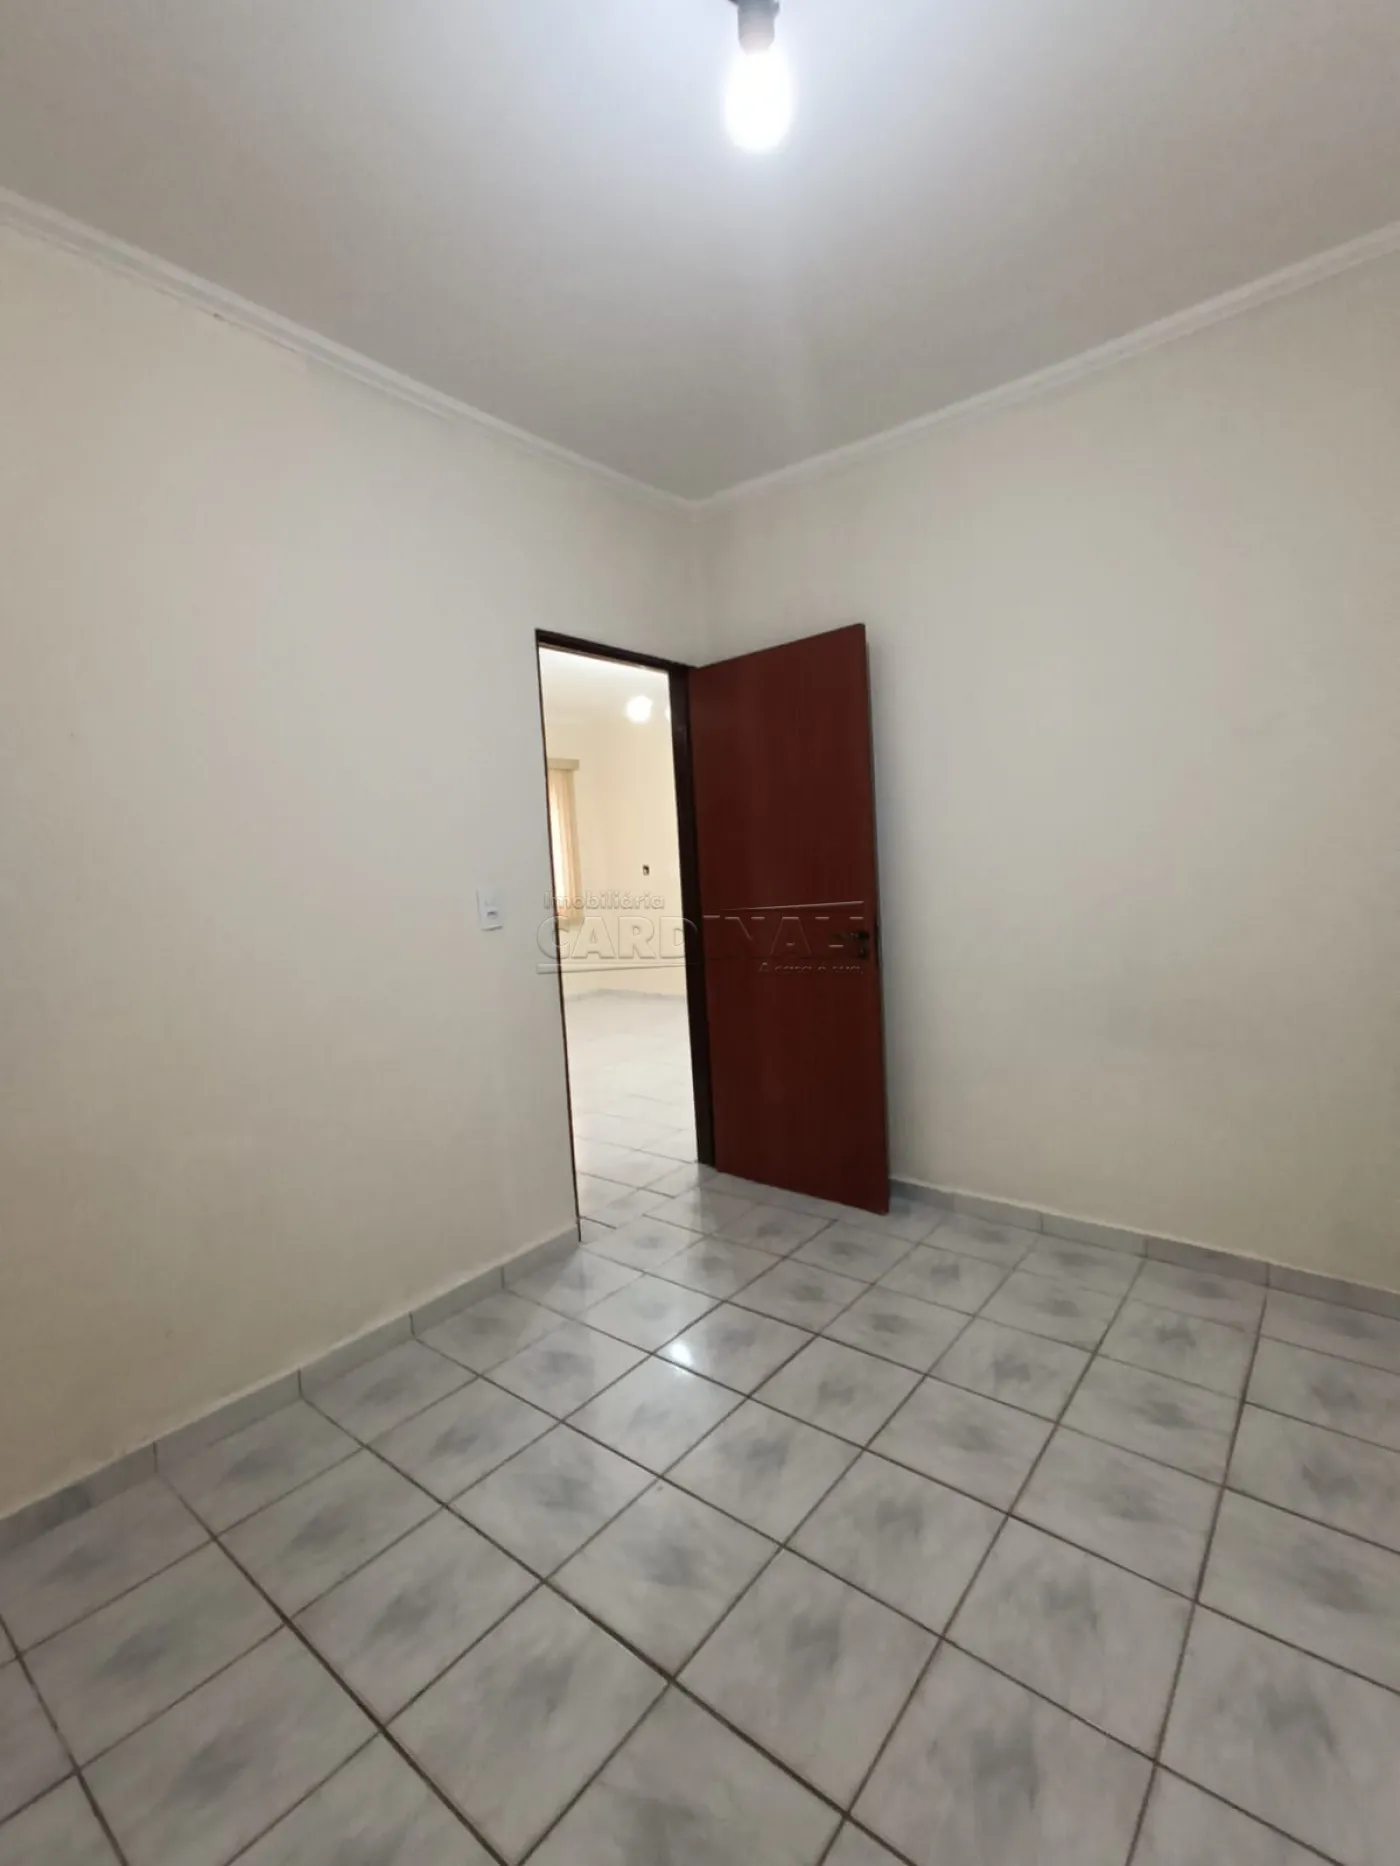 Alugar Apartamento / Padrão em São Carlos R$ 850,00 - Foto 7